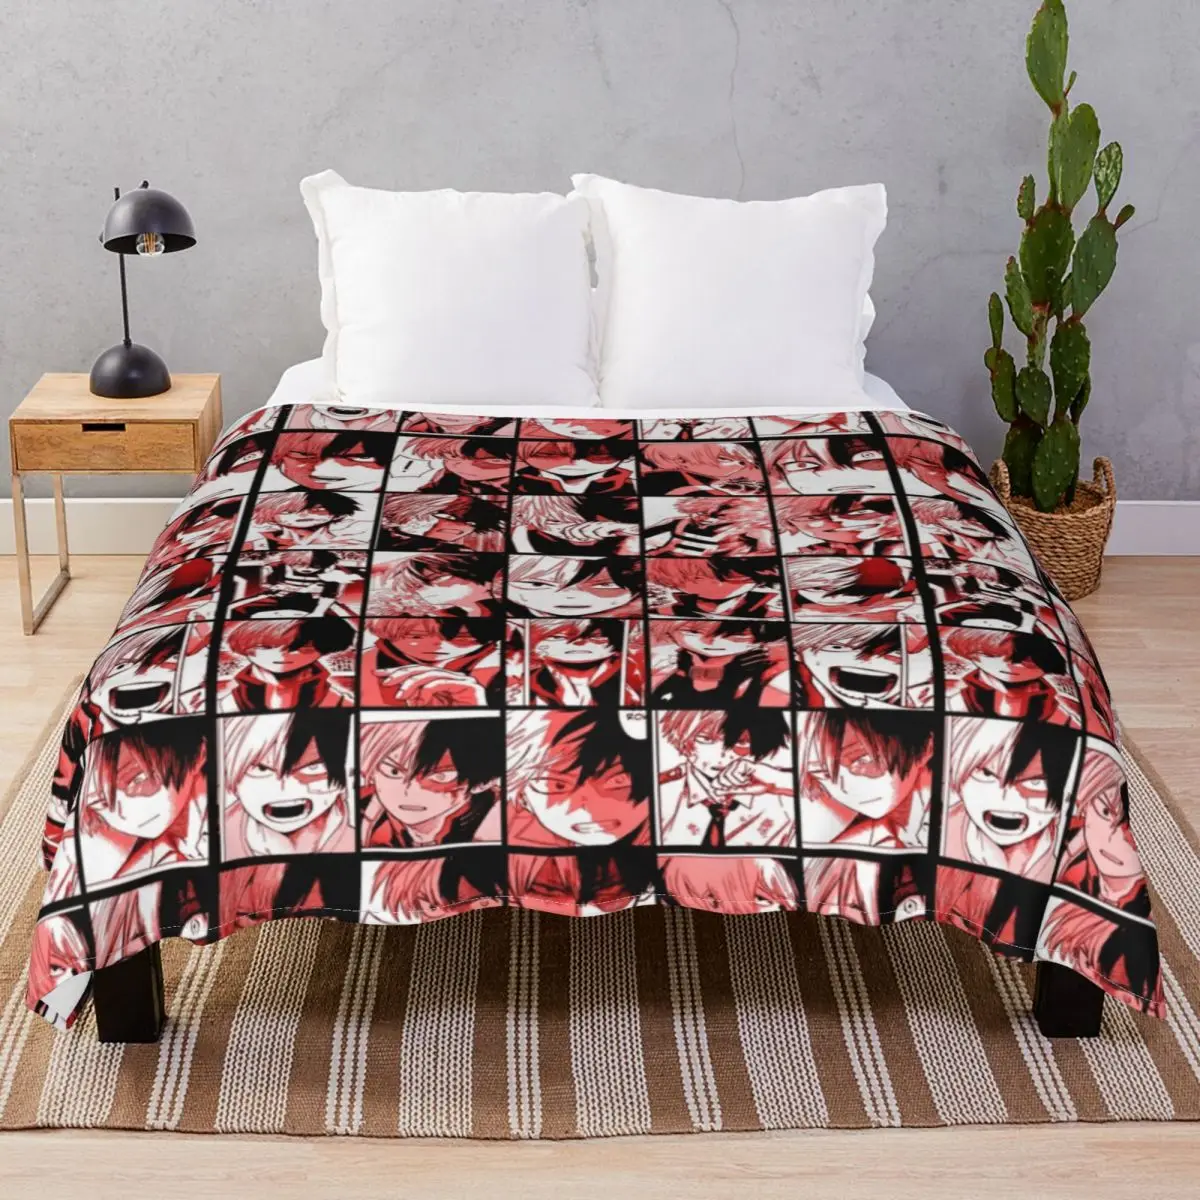 

Todoroki Shoto коллаж одеяло s коралловый флис весна/осень портативный плед одеяло для кровати домашний диван путешествия кинотеатр